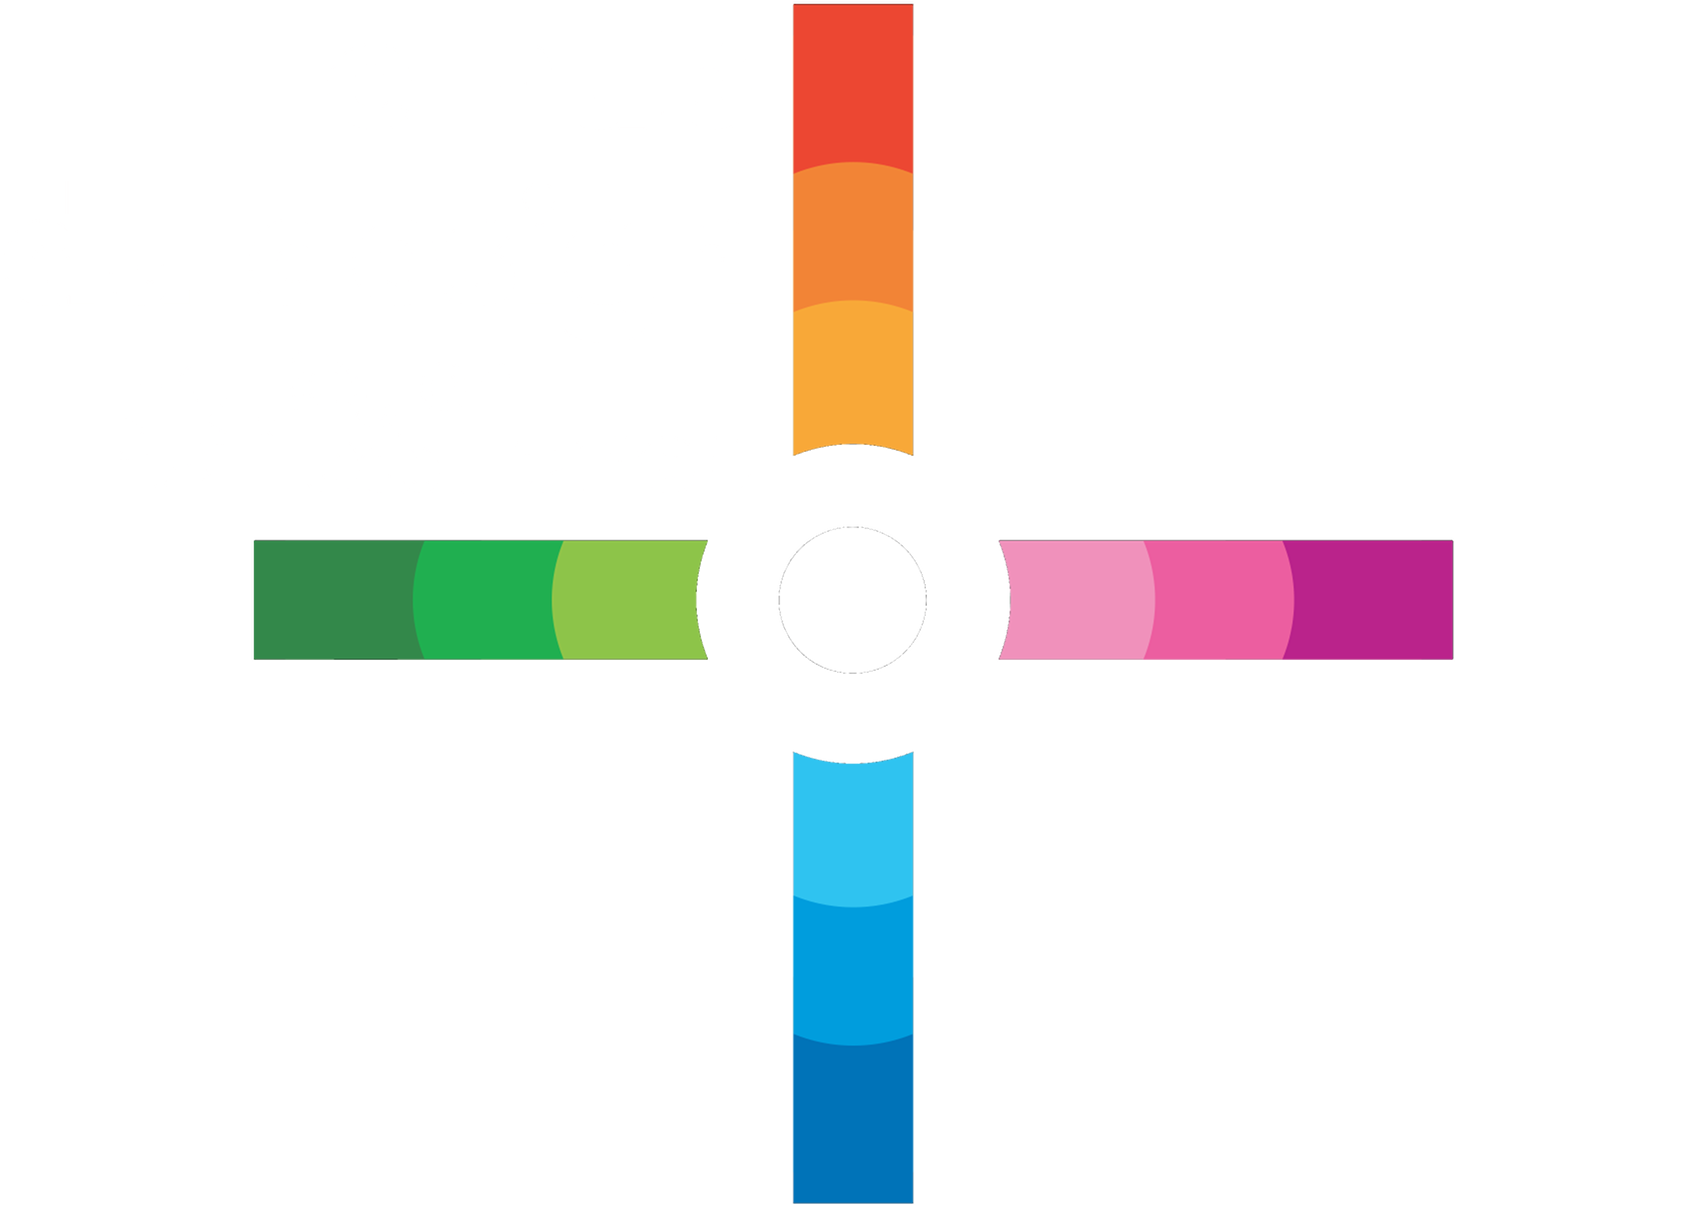 Le Hub du design- Ile de France